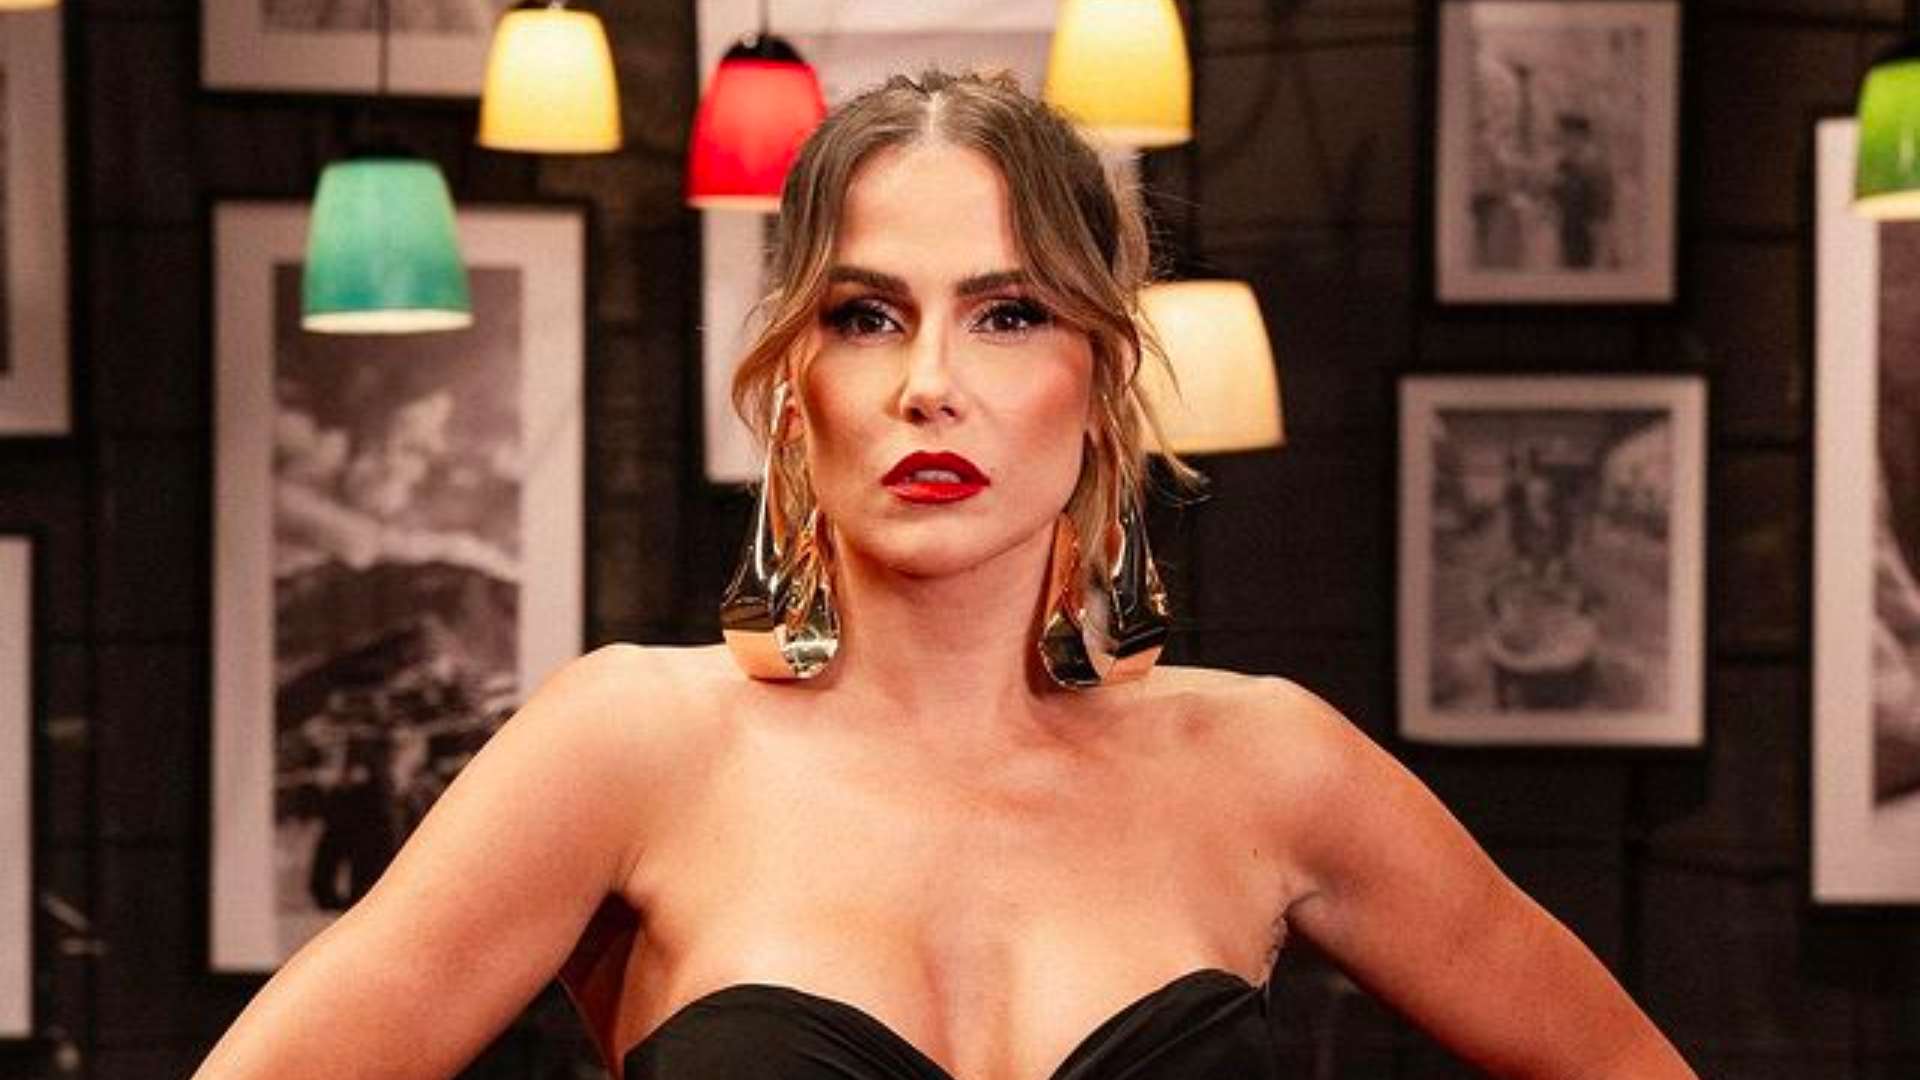 Caos na internet: Deborah Secco desafia a censura ao posar completamente nua no Instagram e choca os fãs - Metropolitana FM